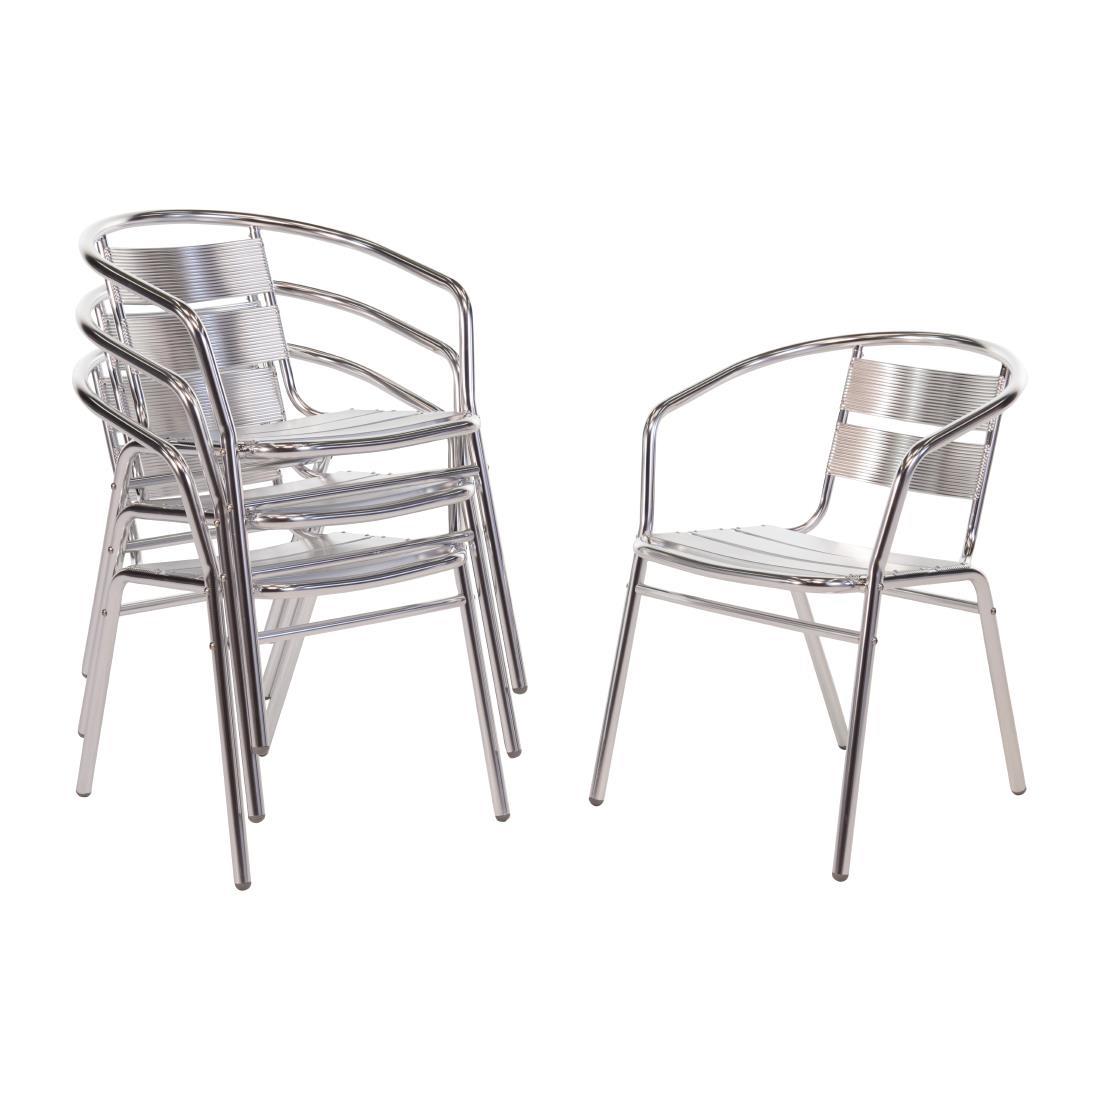 Bolero Aluminium Stacking Chairs (Pack of 4) - U419  - 1